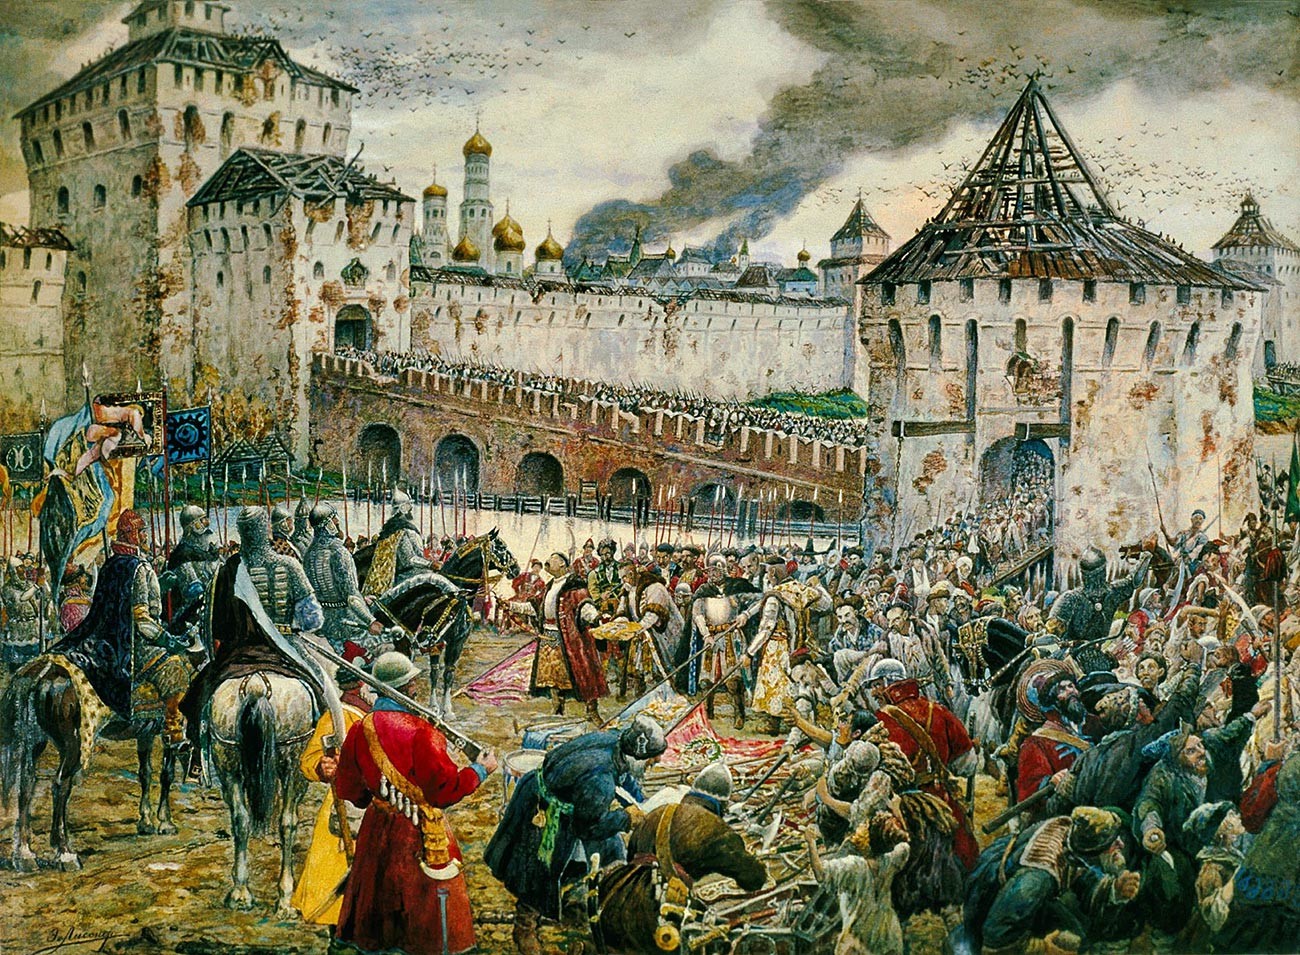 “Polandia menyerahkan Kremlin Moskow kepada Pangeran Pozharsky pada 1612” oleh Ernst Lissner